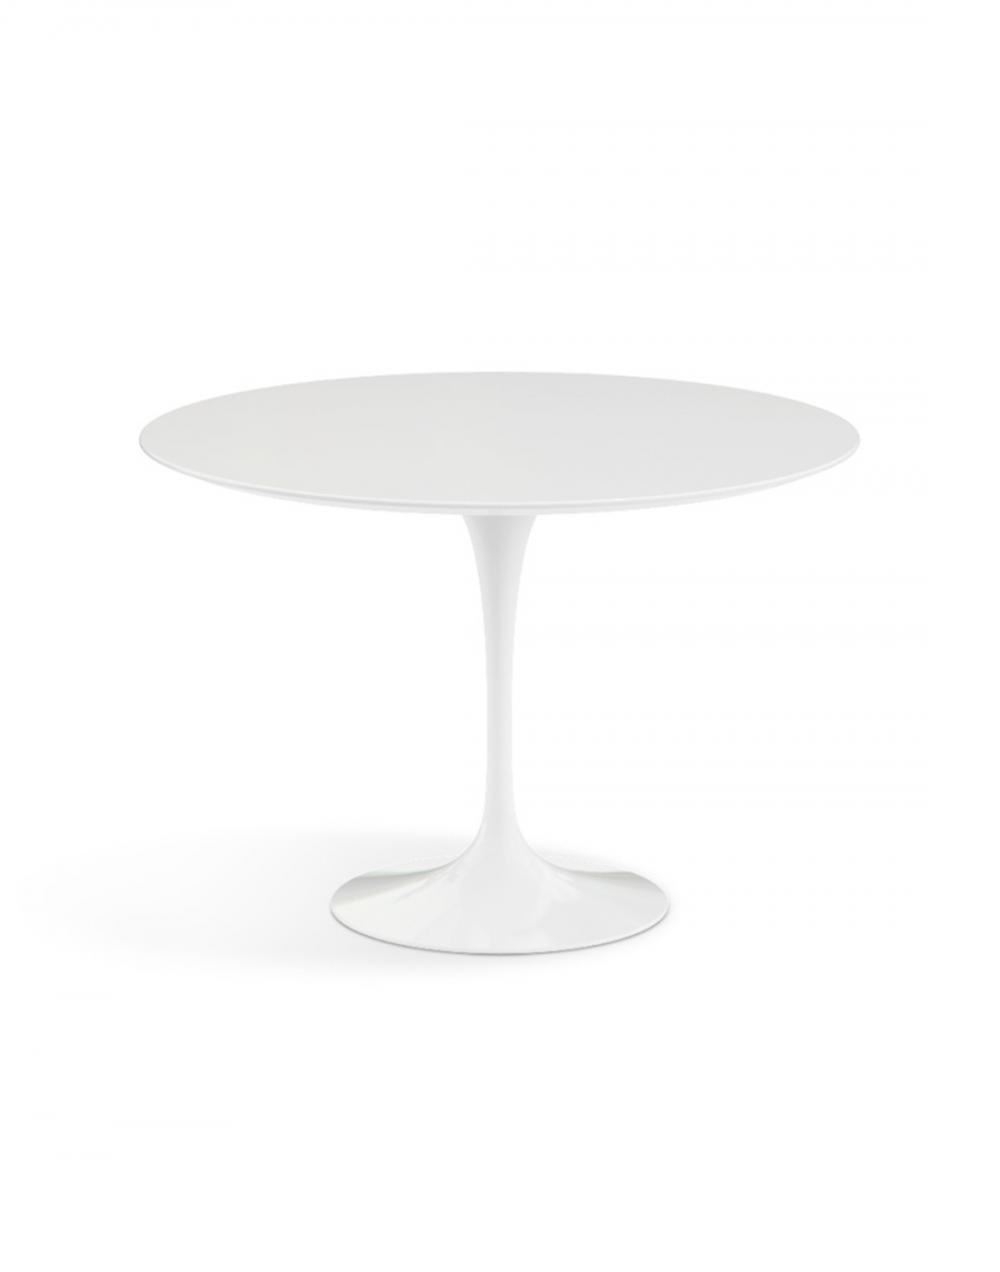 Saarinen Dining Table Round Medium White Base White Laminate Top